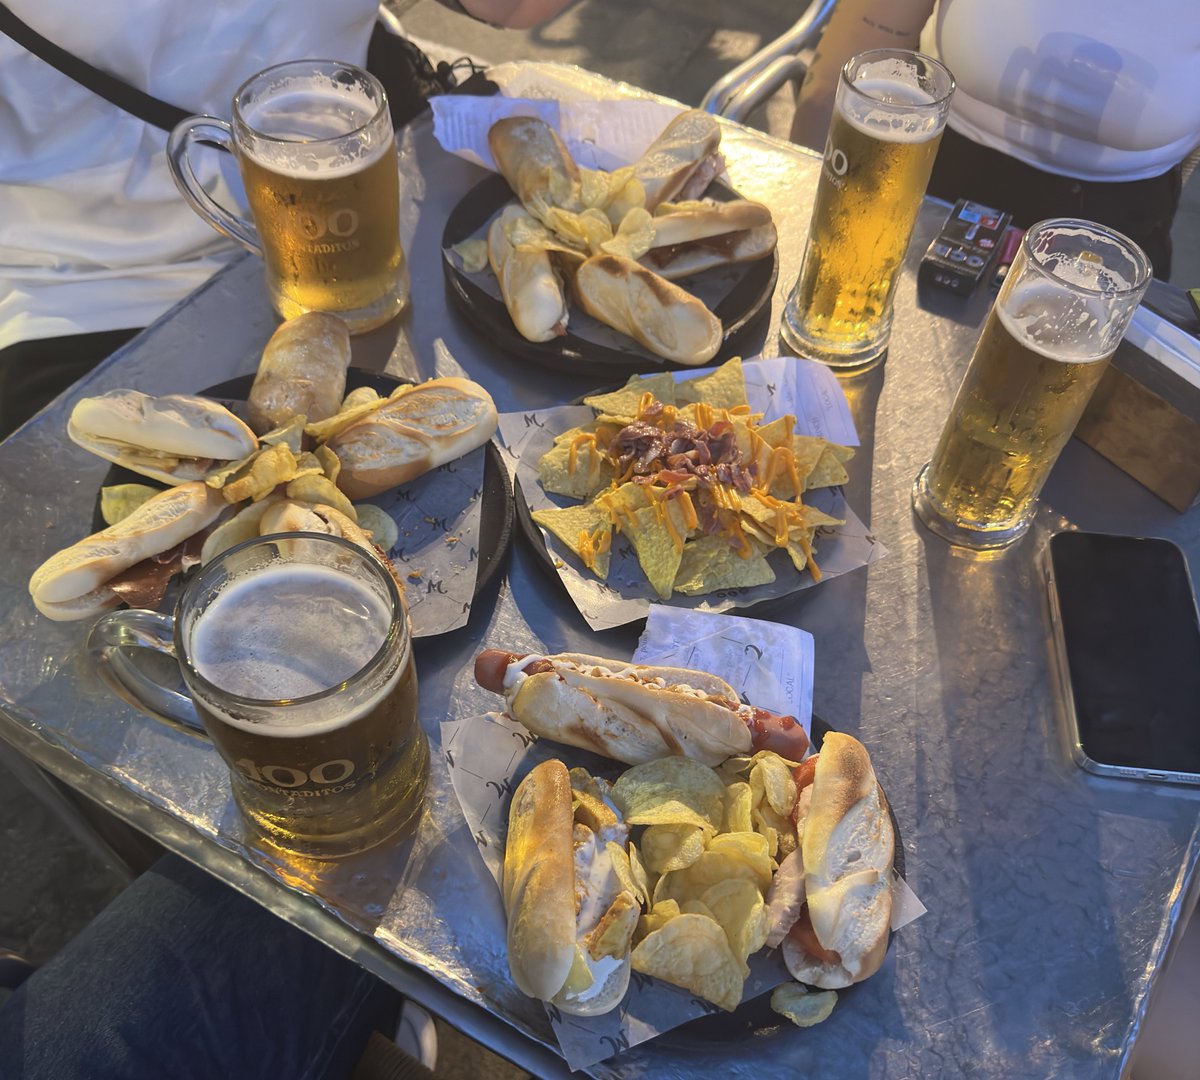 Bu masada 4 tane bira, 13 tane mini sandviç, patates kızartması ve 1 tane de cheddarlı nachos var. Topam 22€’ya 4 kişi tıka basa doyduk. Canım İspanya😍